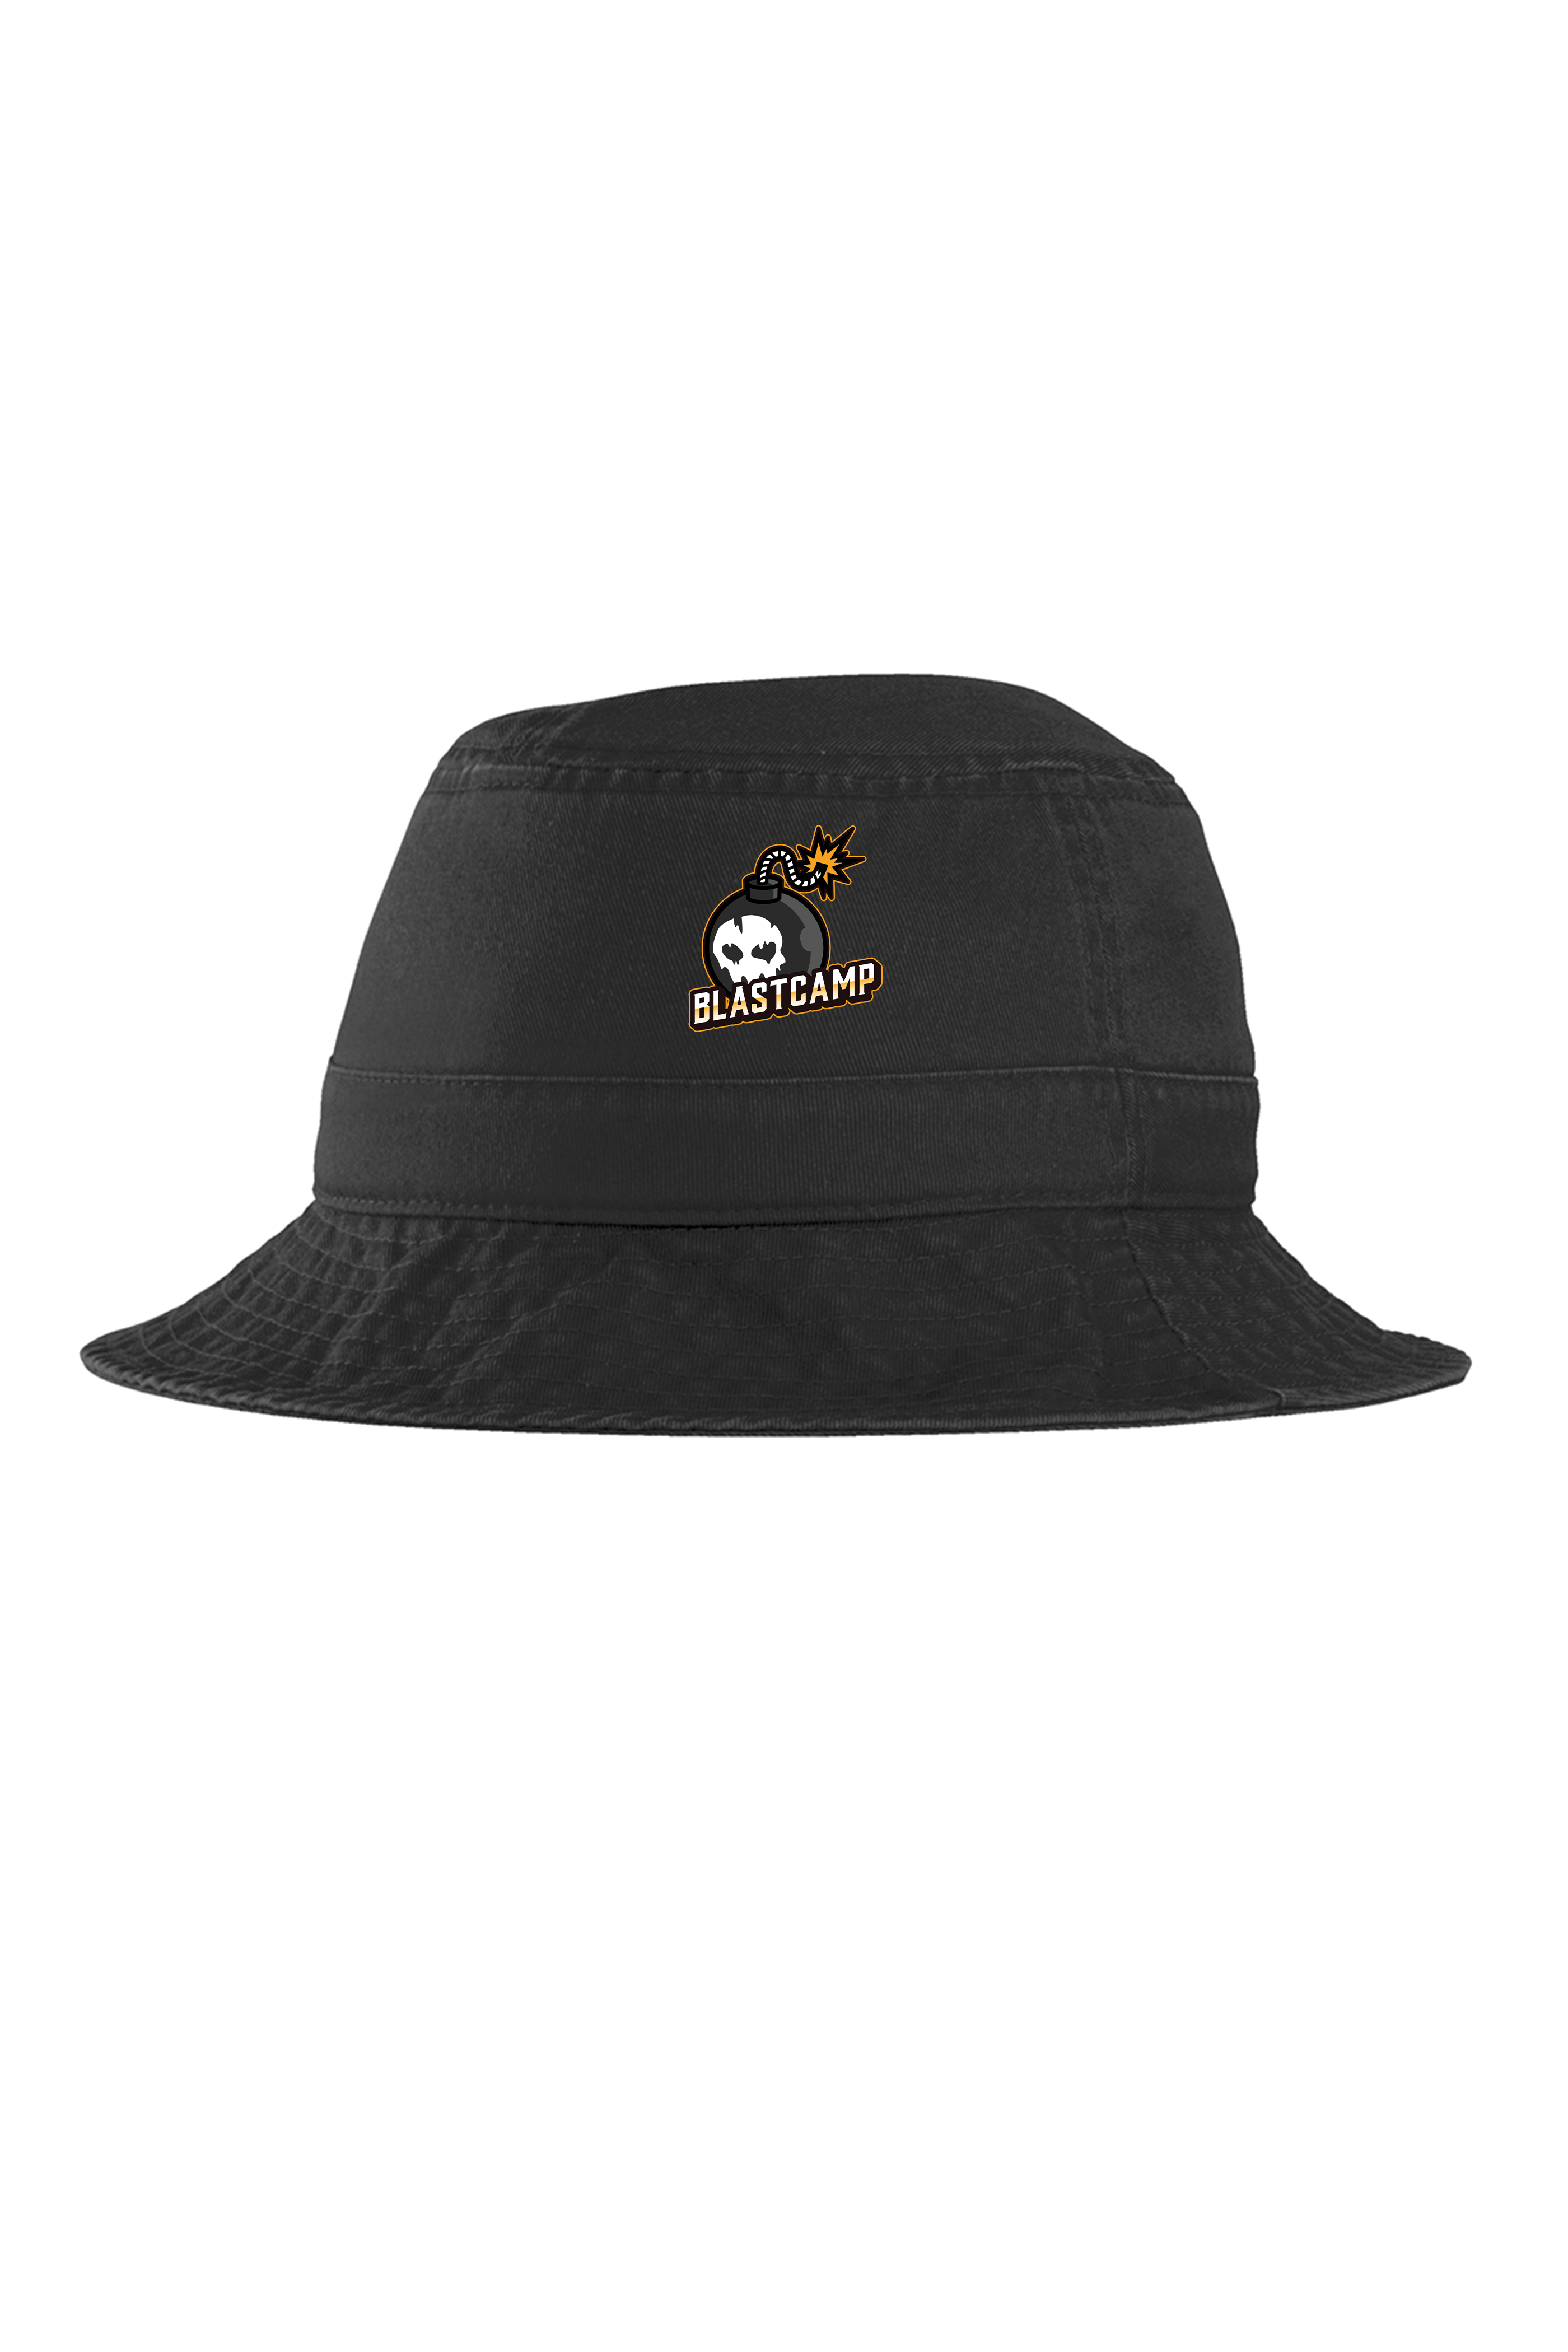 BlastCamp Bucket Hat